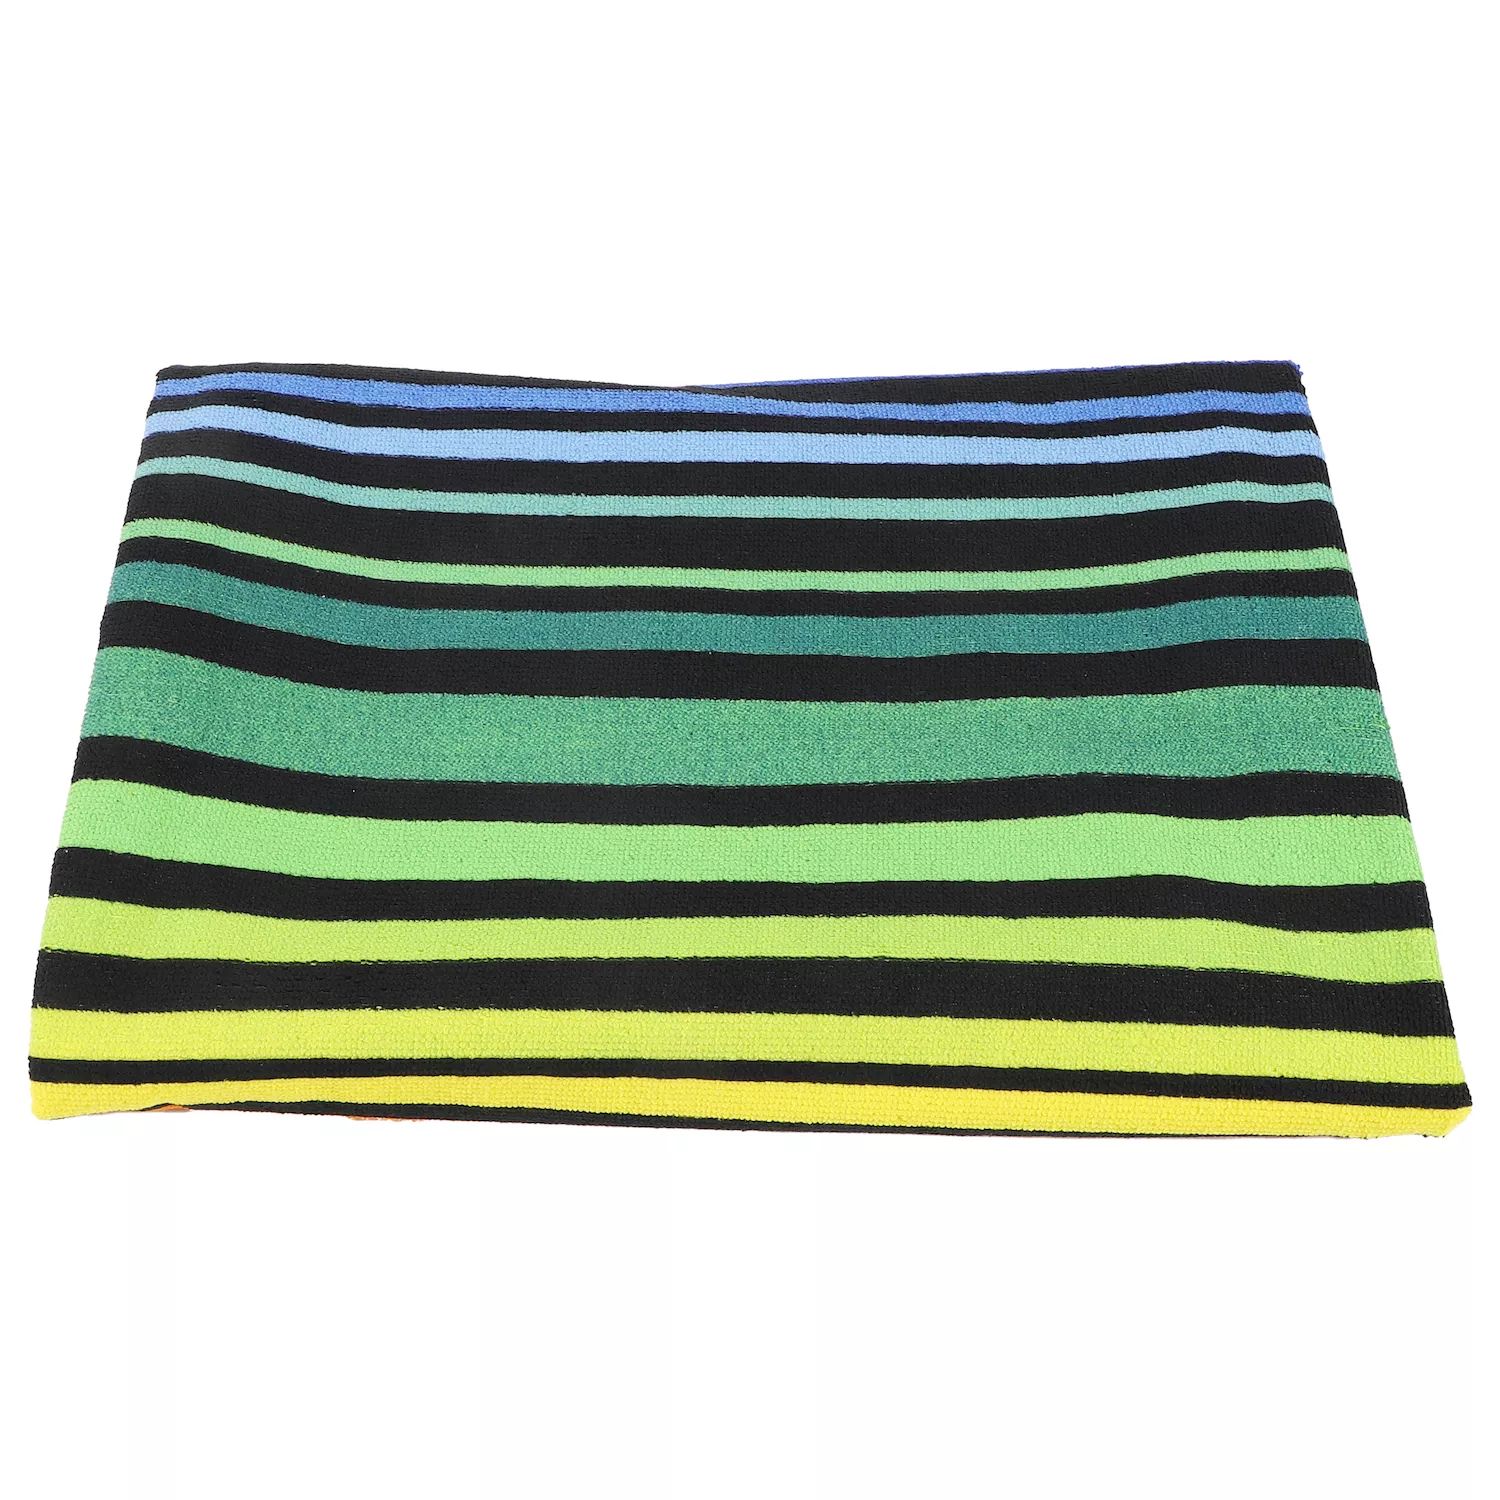 1 шт. мягкое впитывающее пляжное полотенце классического дизайна для пляжа красочный размер 59 x 30 дюймов